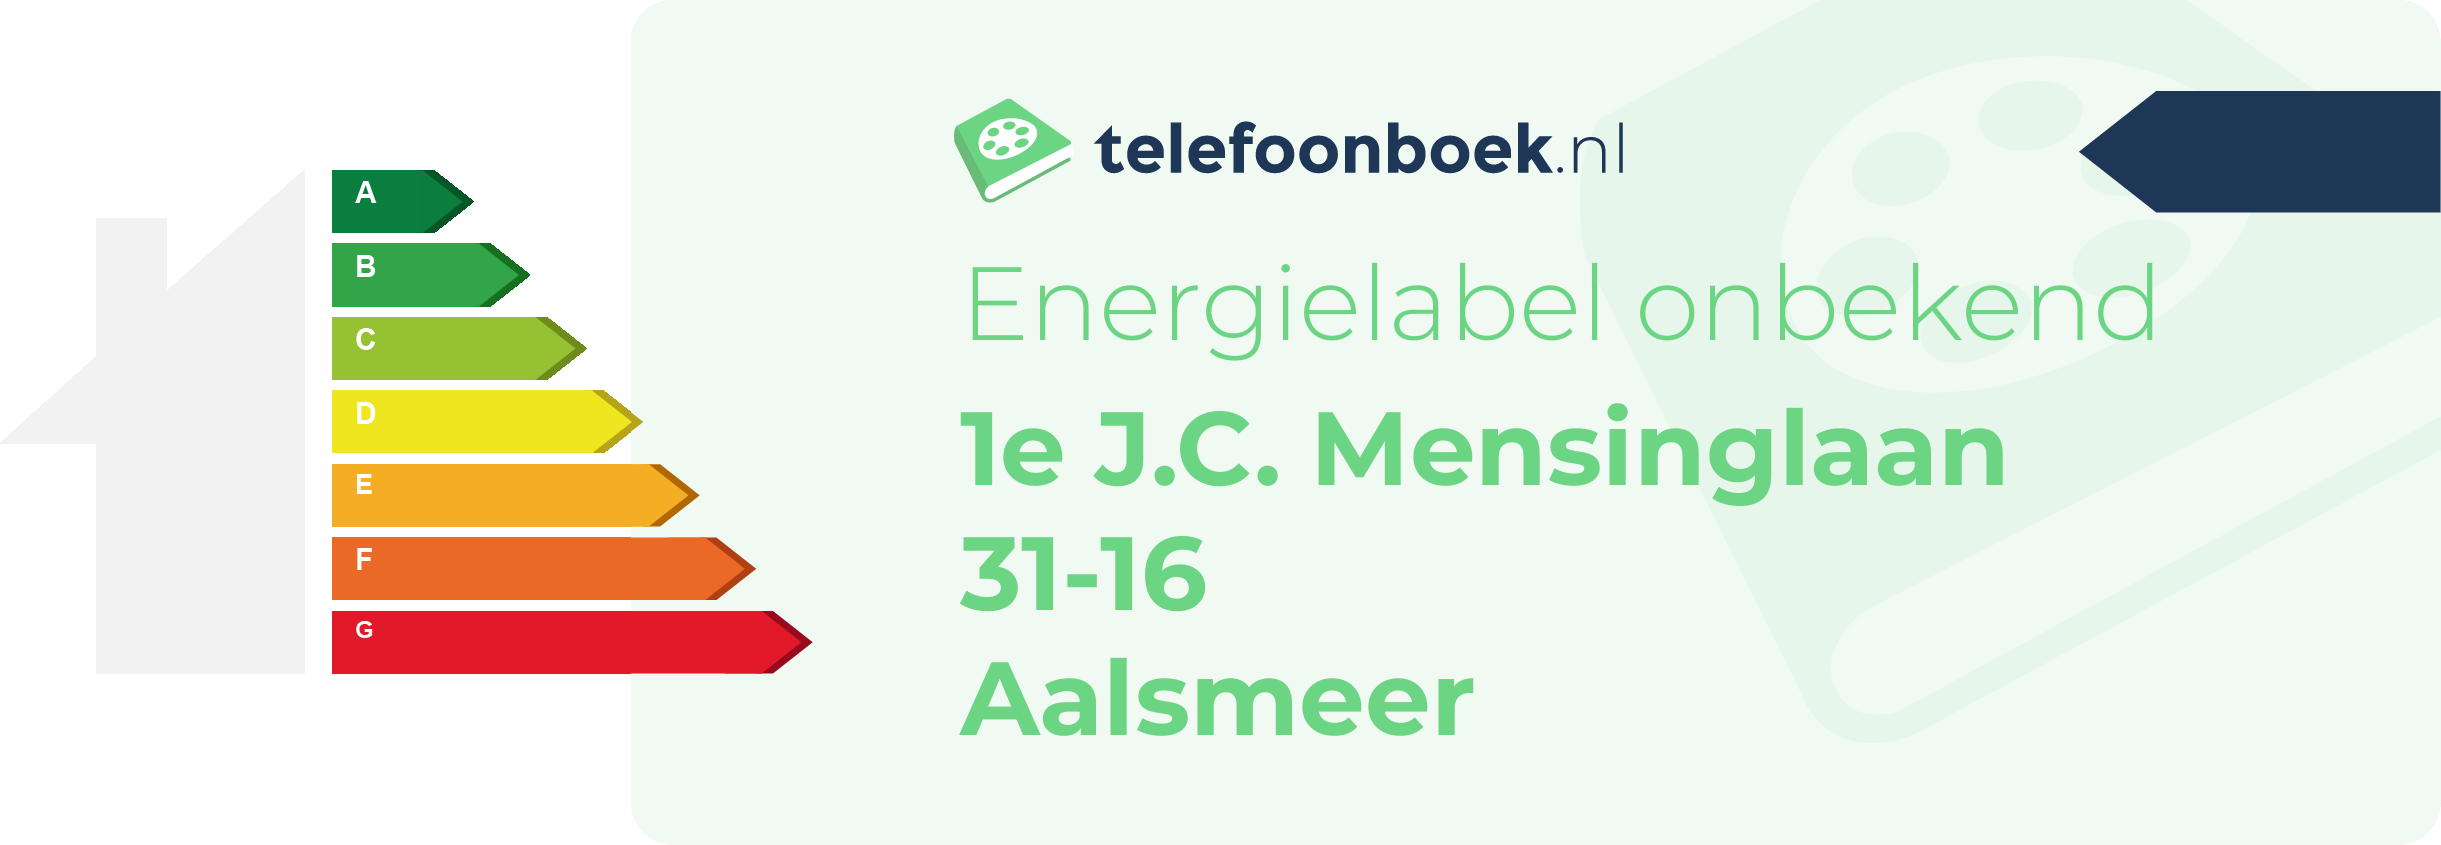 Energielabel 1e J.C. Mensinglaan 31-16 Aalsmeer